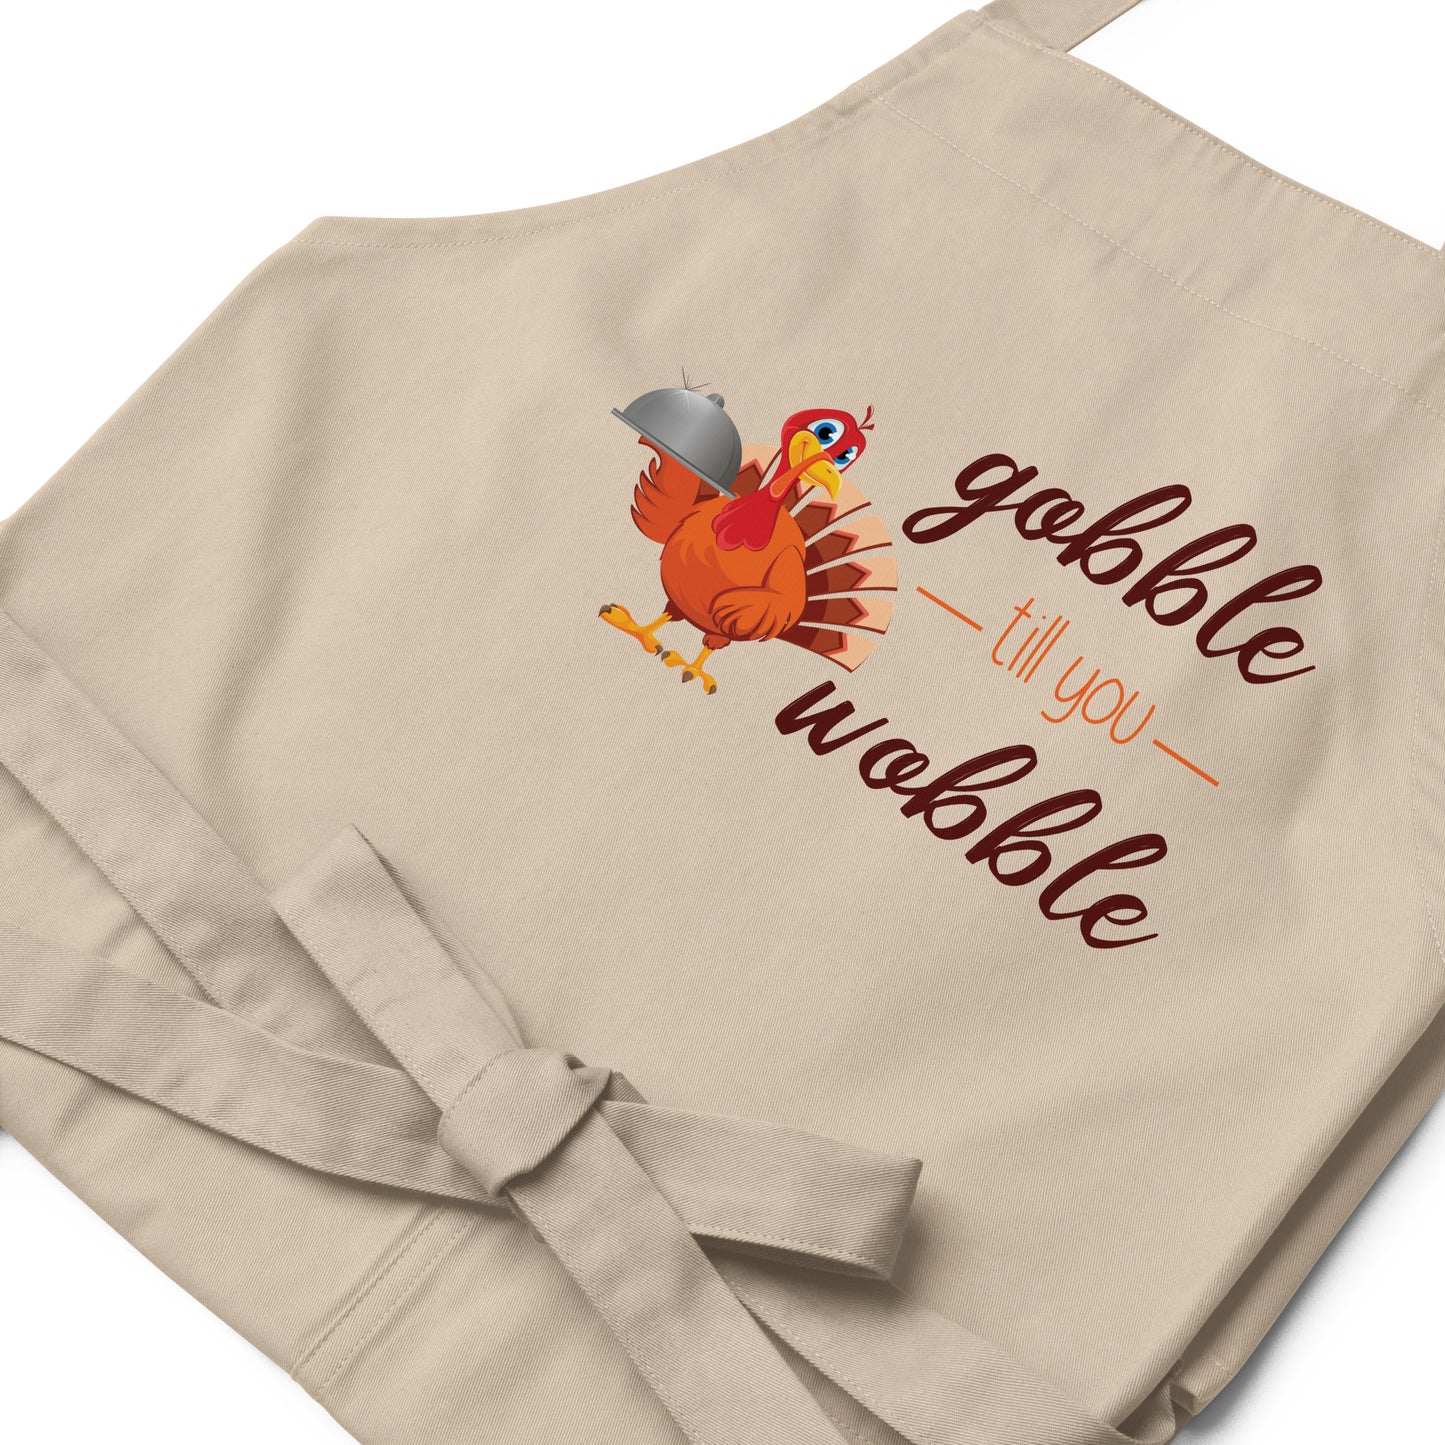 Gobble til you Wobble Organic cotton apron